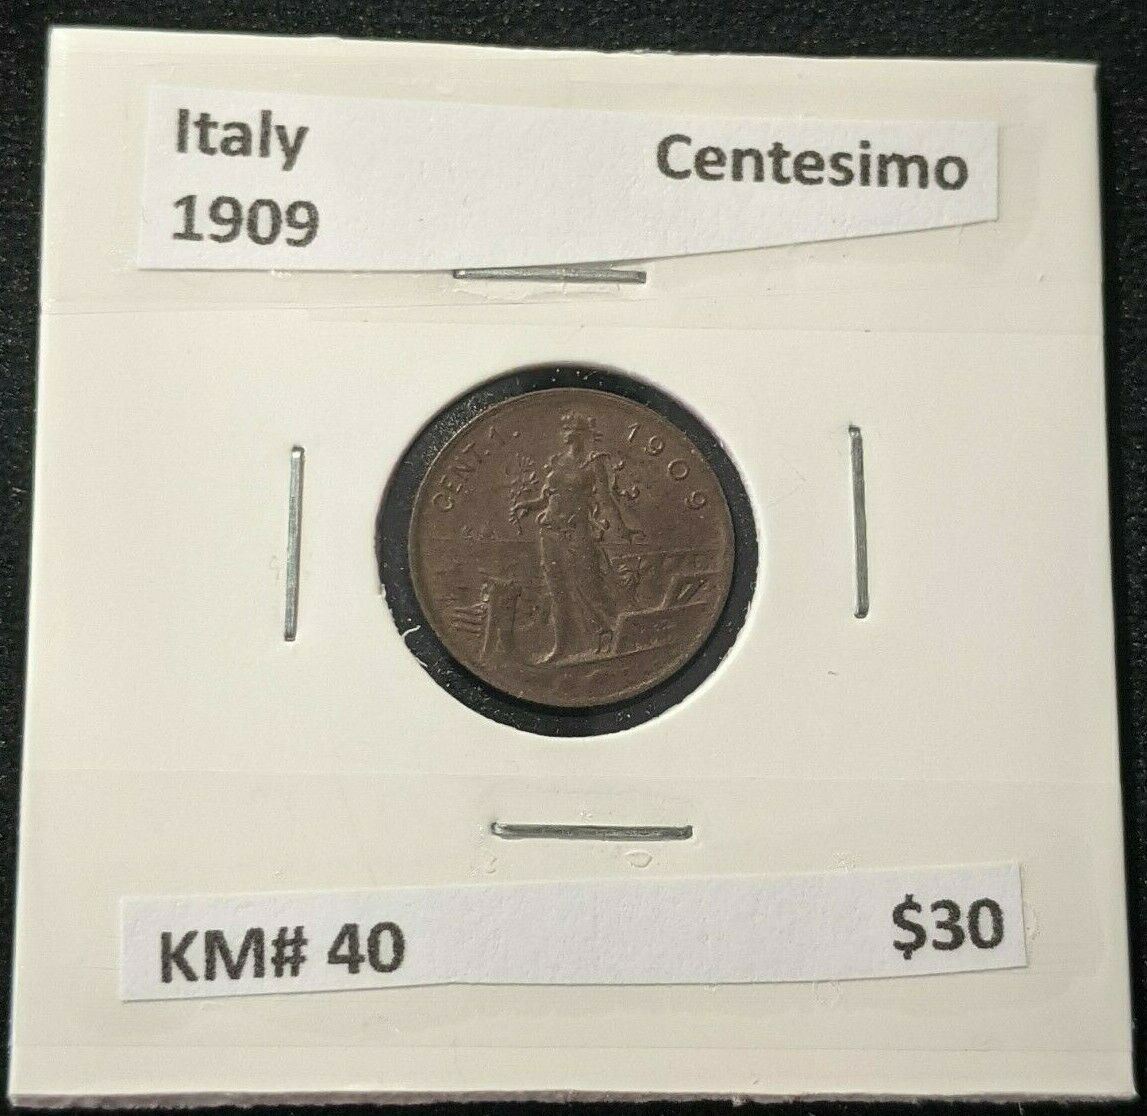 Italy 1909 Centesimo KM# 40 #006